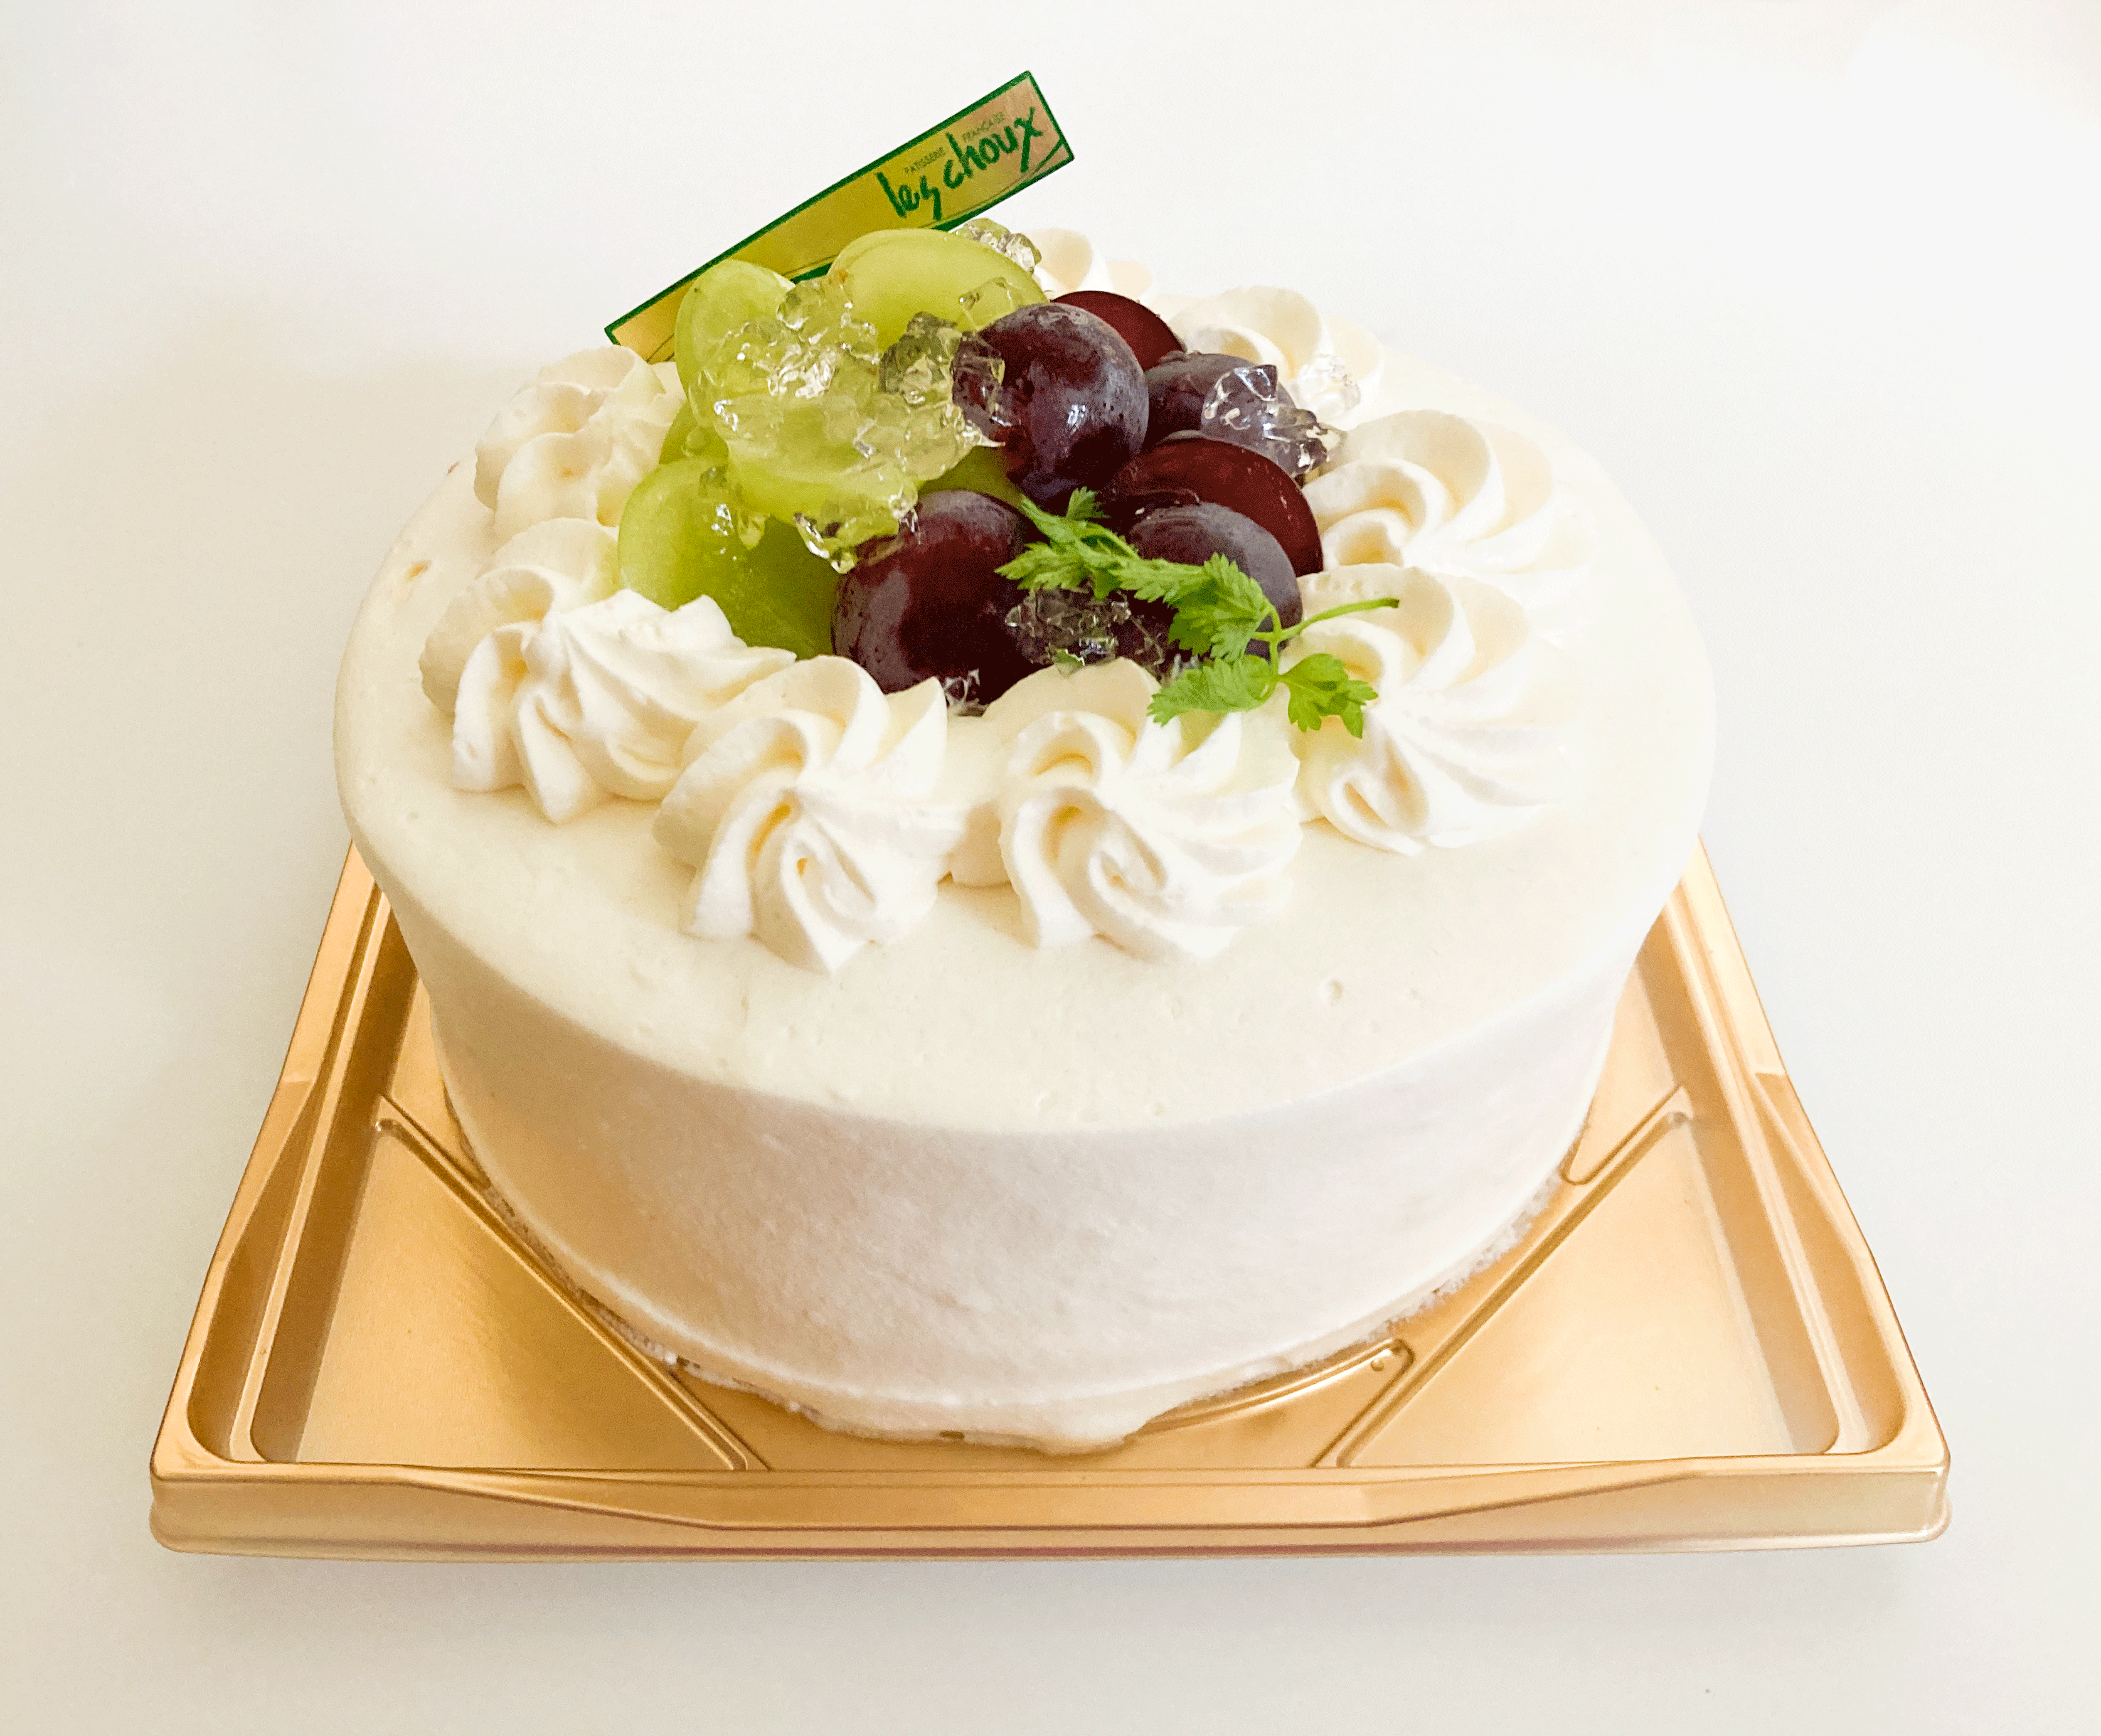 シャインマスカットと巨峰のショートケーキ レ シュー 西鎌倉 湘南にあるケーキとお菓子のお店 Les Choux